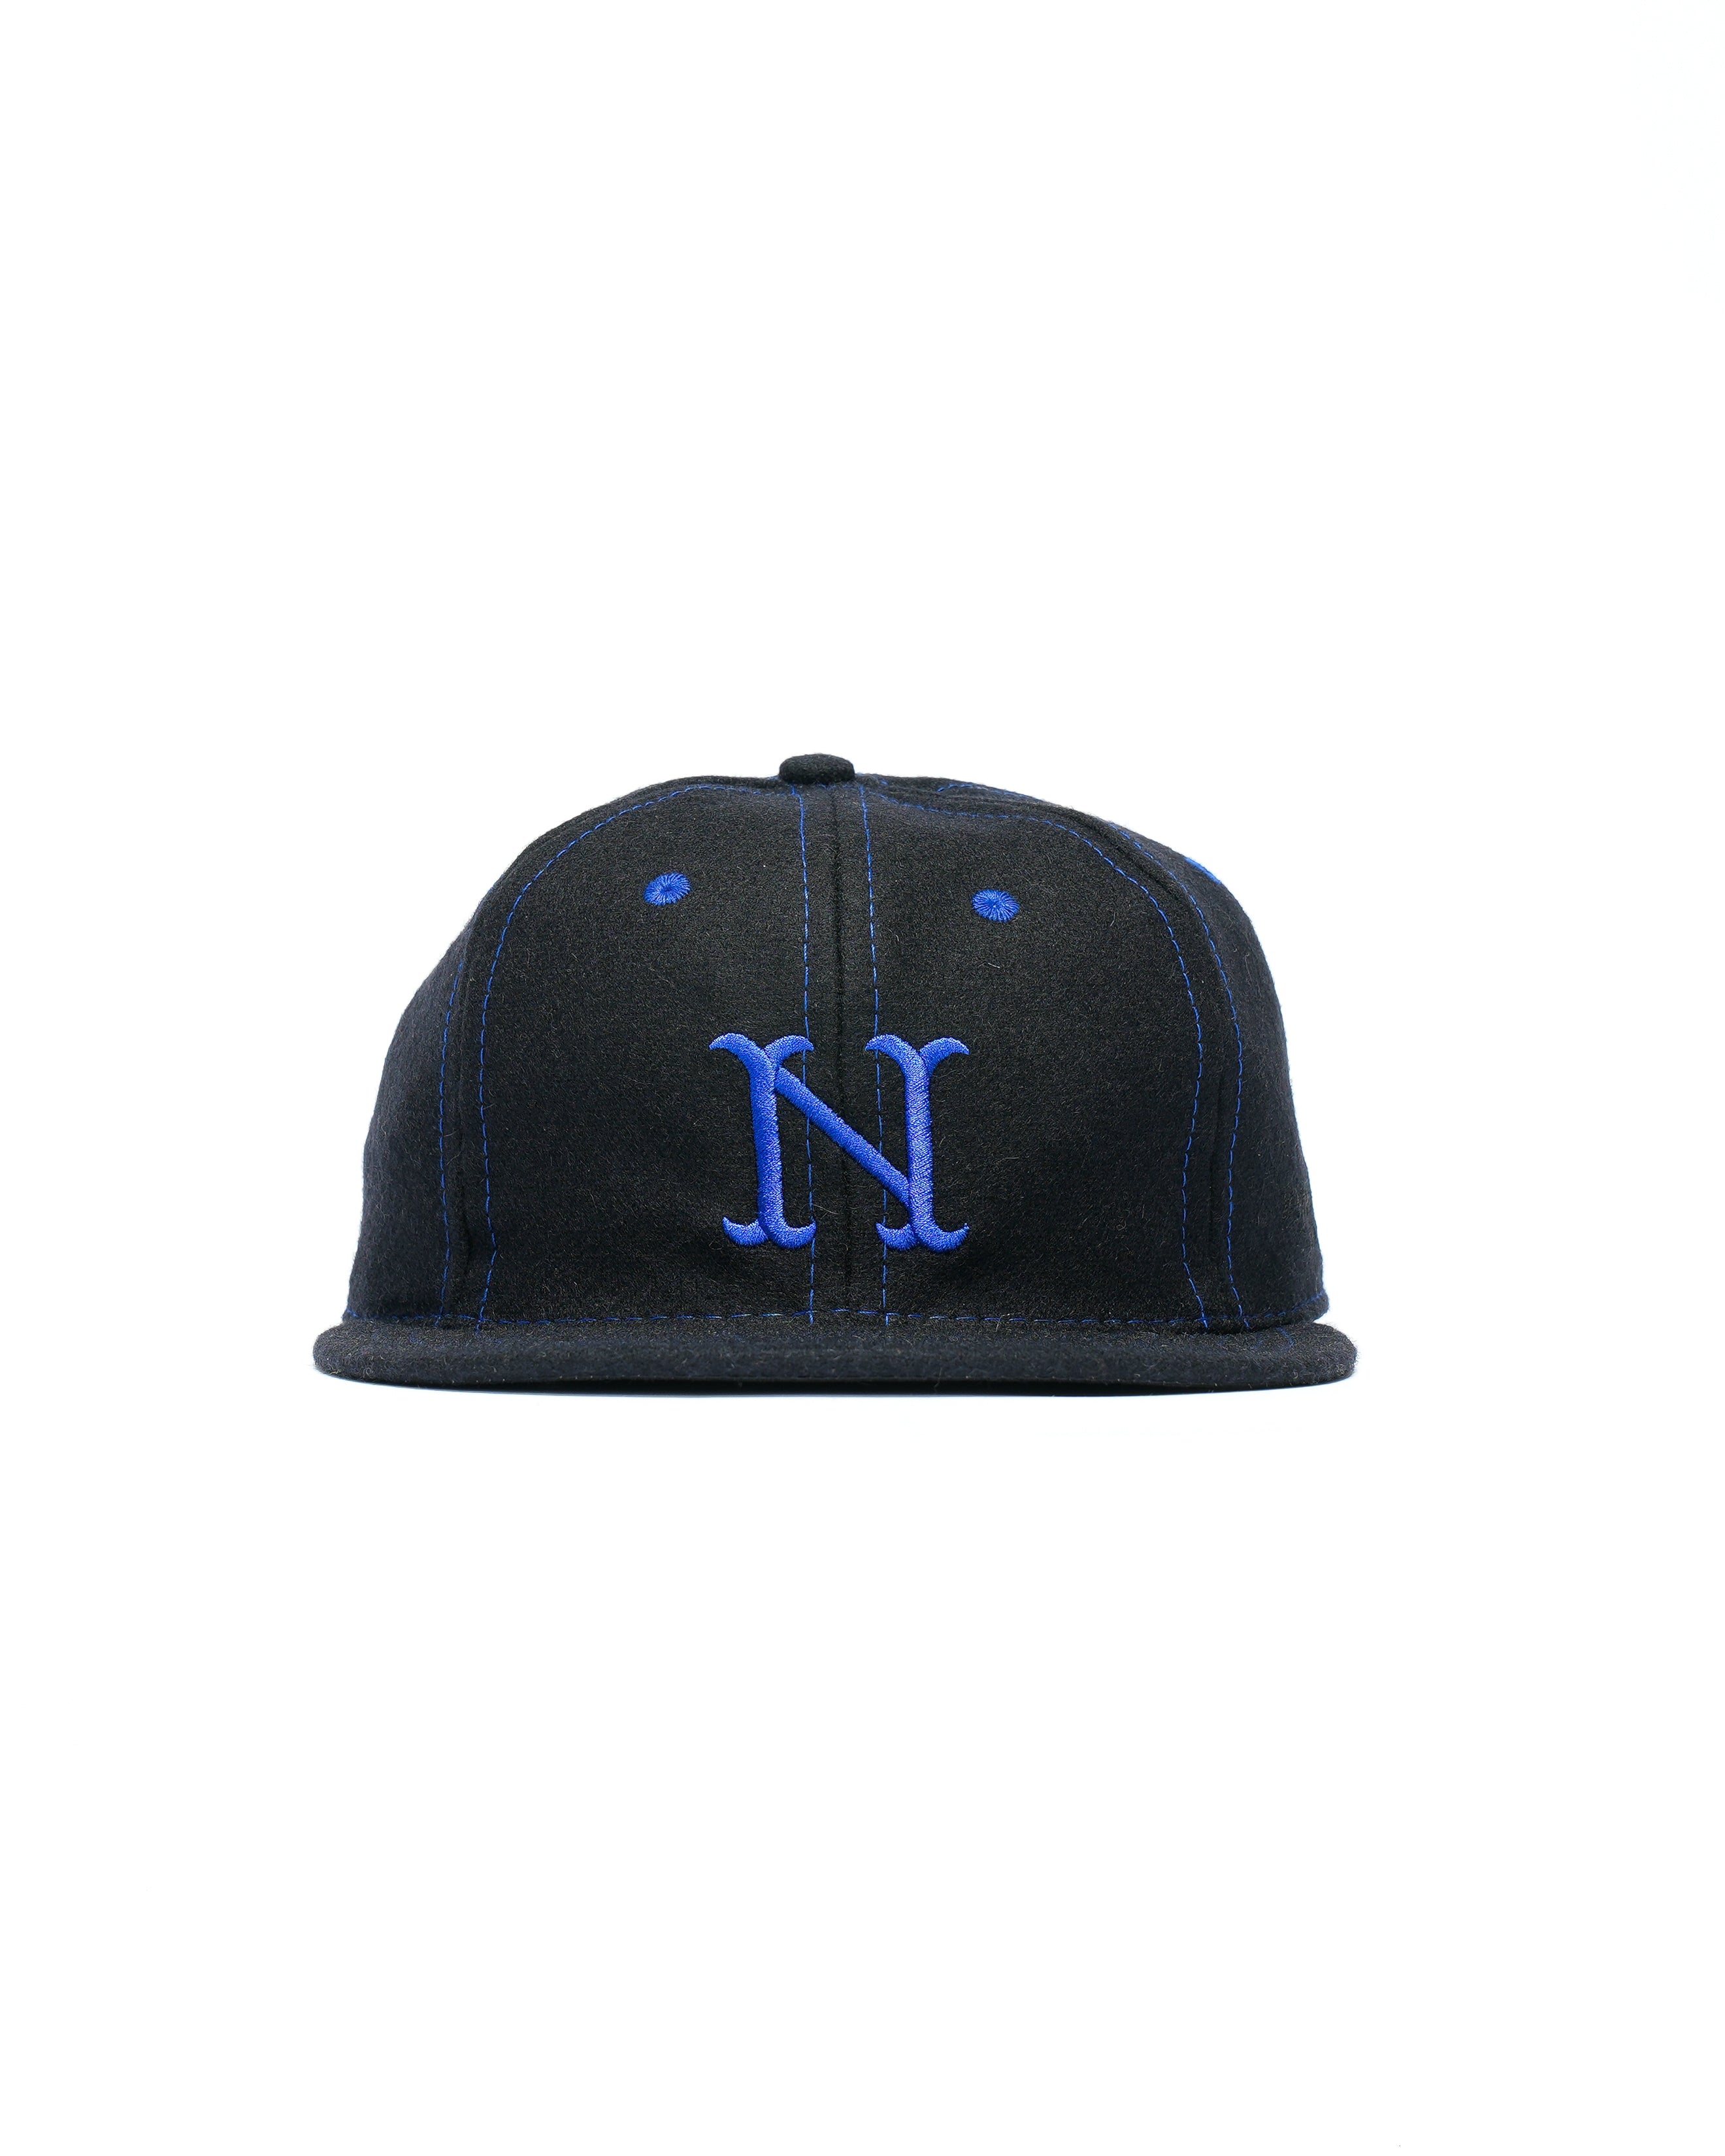 Nepenthes New York x Better Gift Shop - New Era Cap - Navy